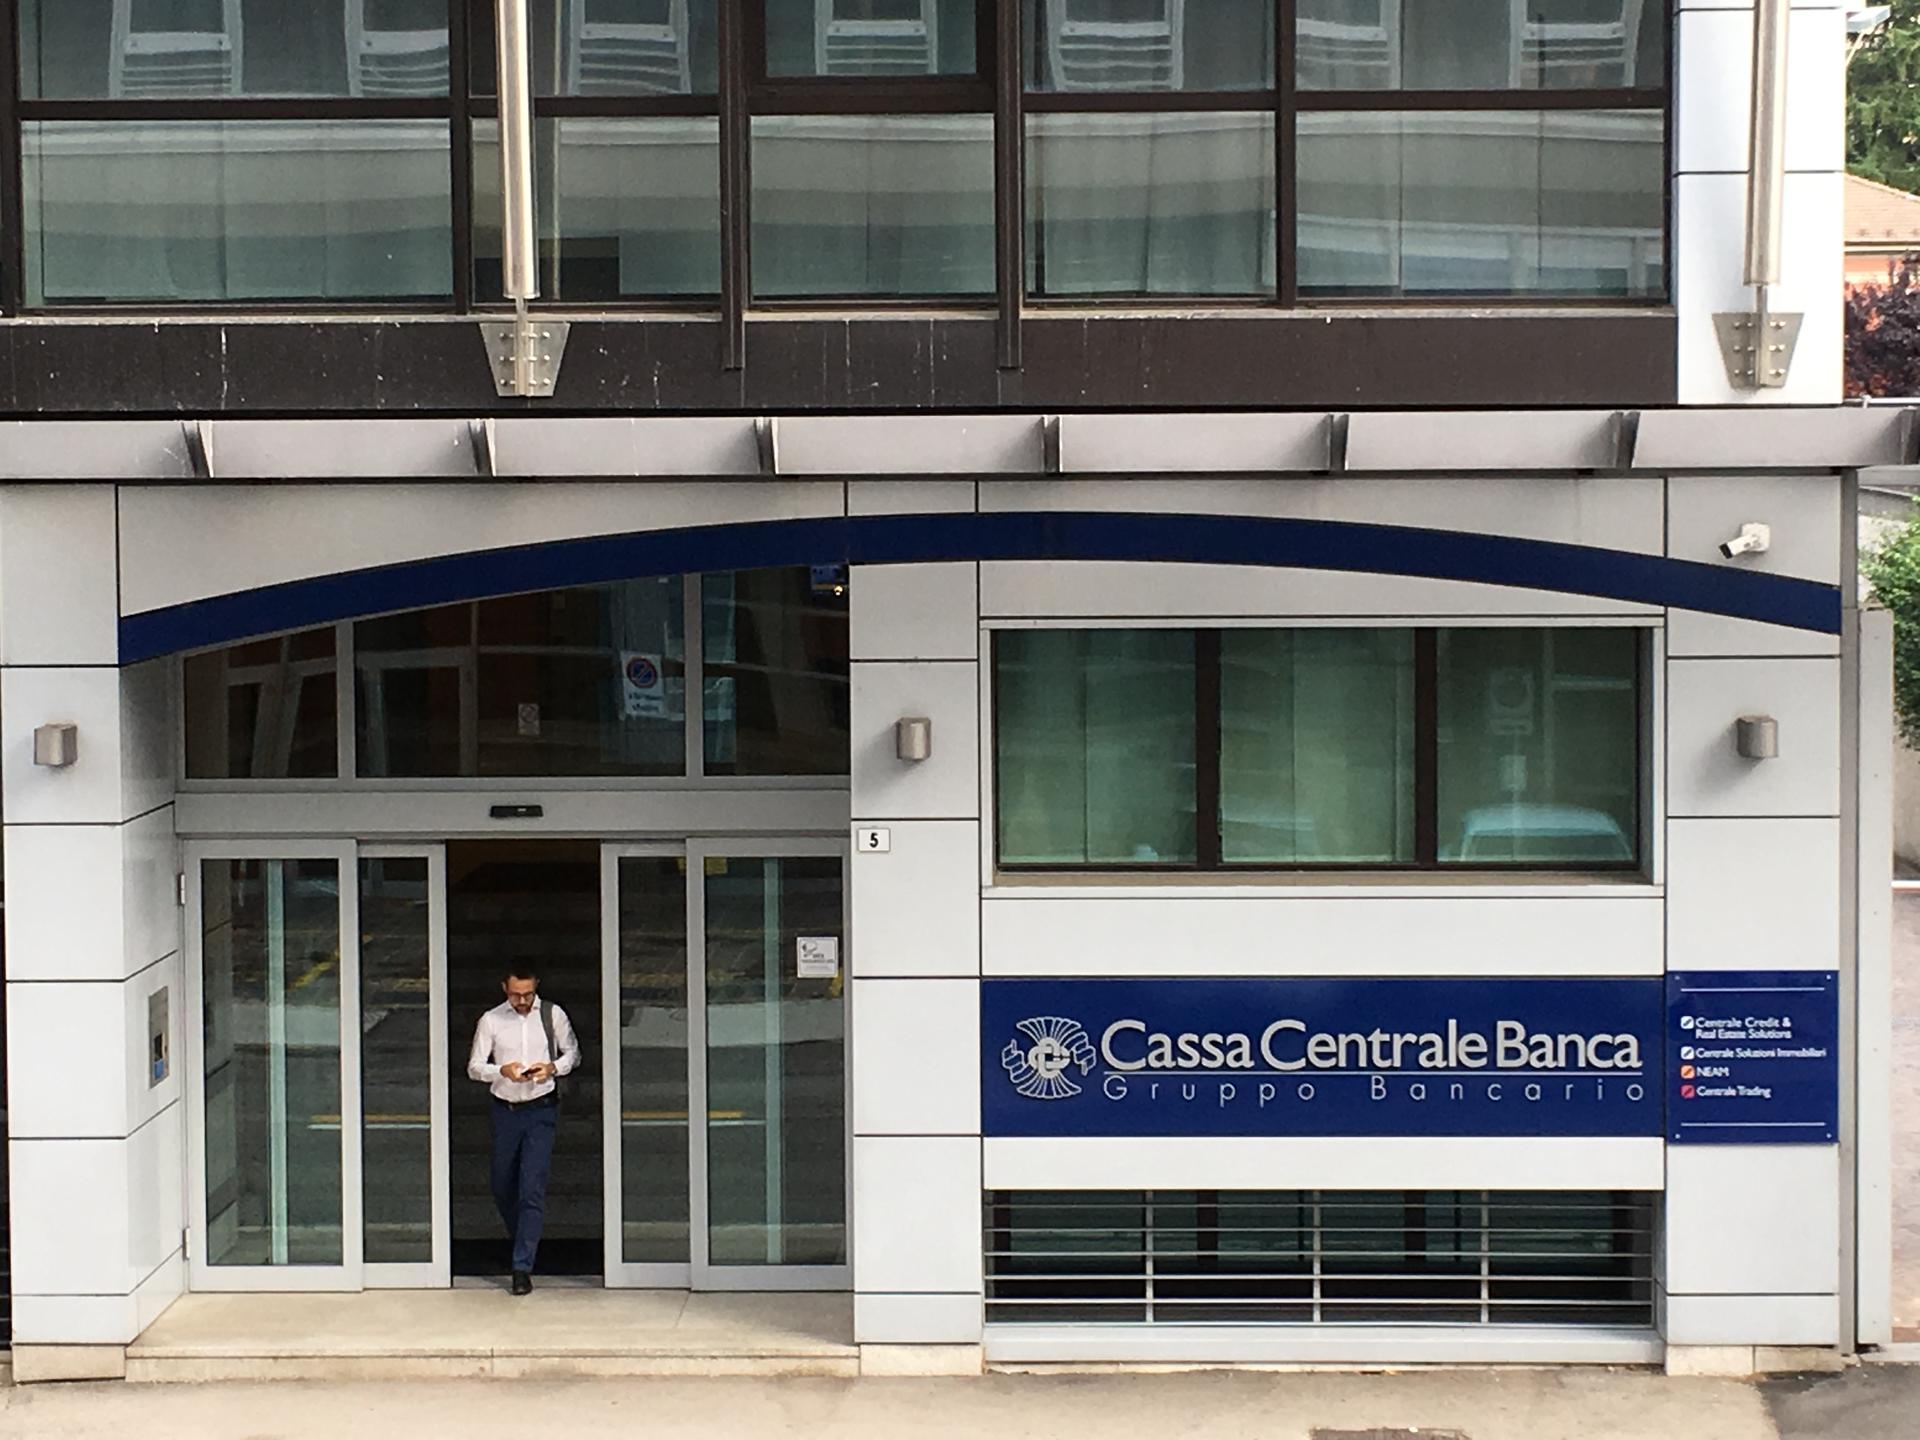 Cassa Centrale Banca perfeziona l’acquisto di Claris Leasing, acquisendo il 100% delle azioni dell’azienda ex Gruppo Veneto Banca. Ottenuto il via libera delle Autorità, il Gruppo Bancario Cassa Centrale Banca completa con questa operazione l’offerta dei prodotti di leasing.